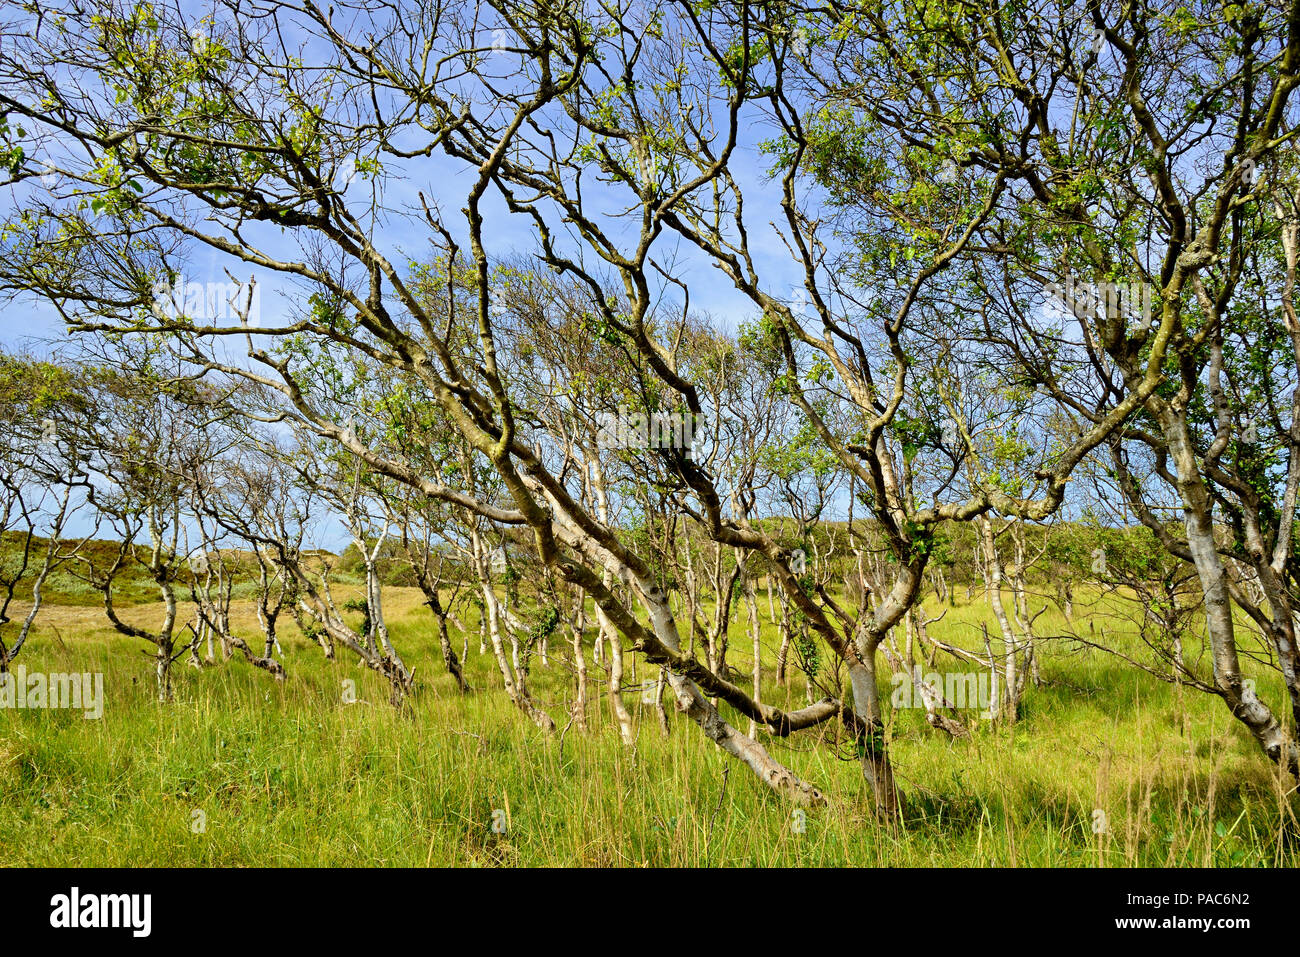 Birken (Betula), Wald mit bizarr gewachsenen Bäume, Norderney, Ostfriesische Inseln, Nordsee, Niedersachsen, Deutschland Stockfoto